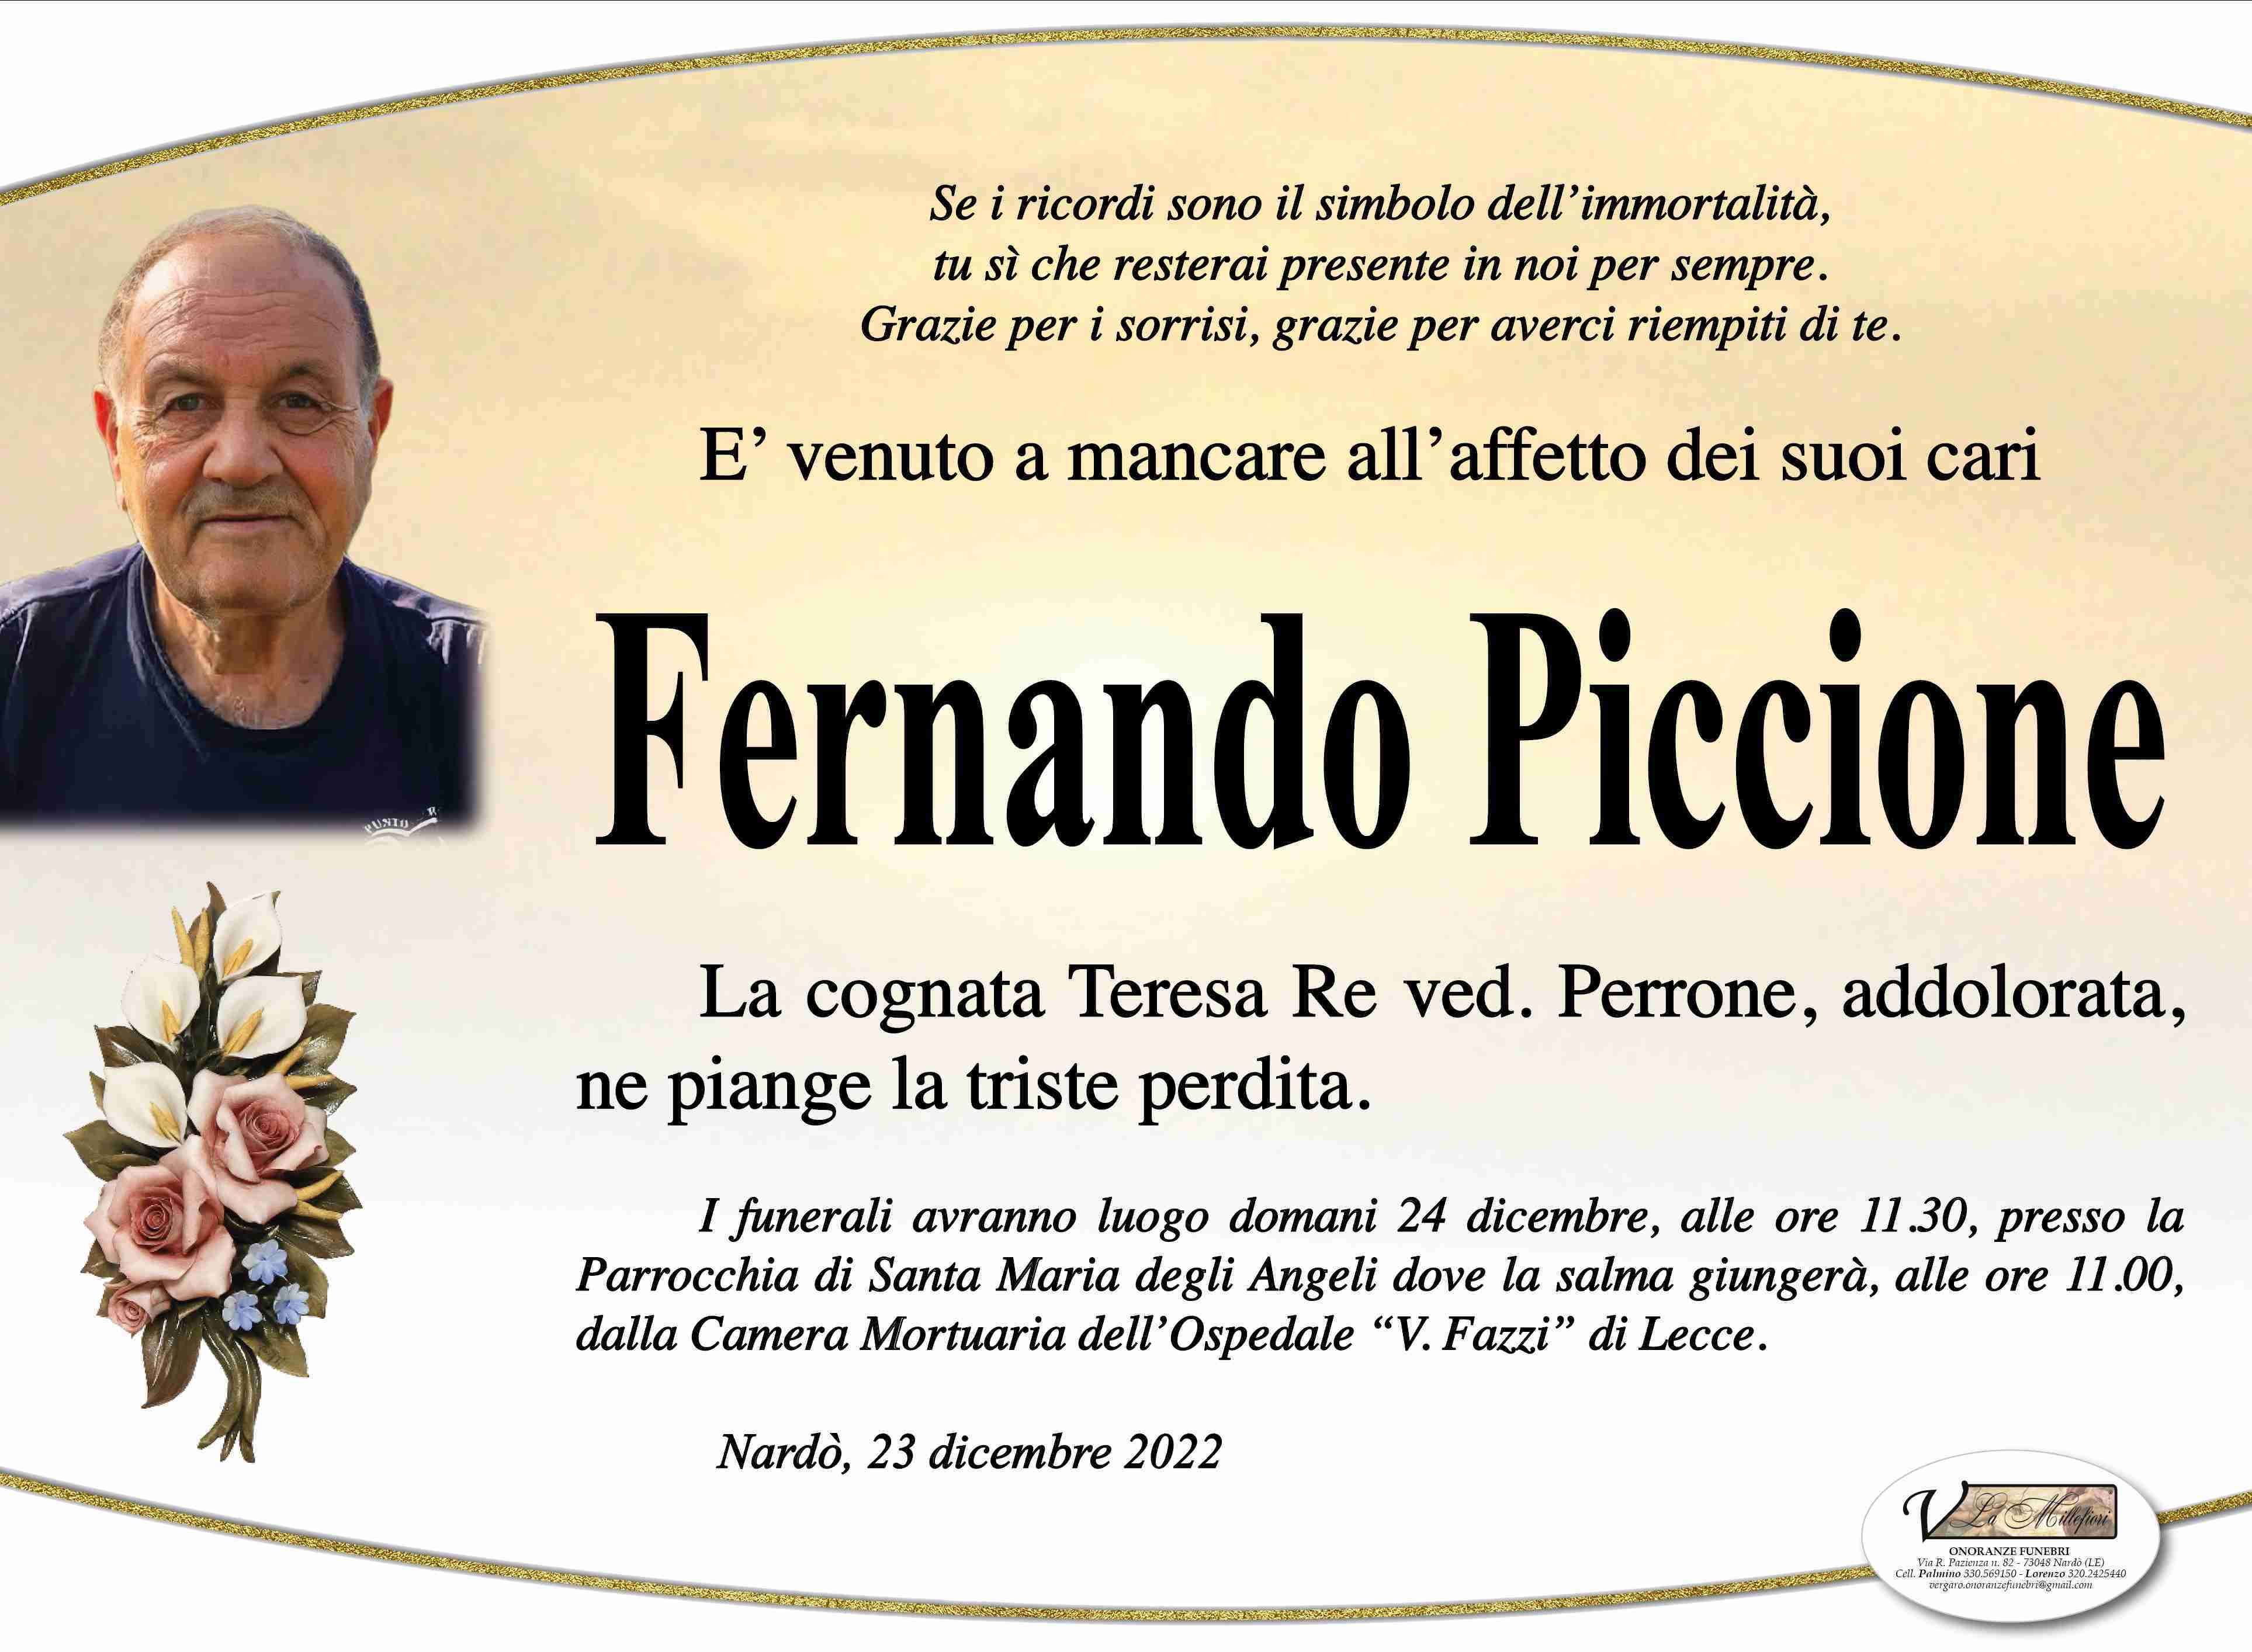 Fernando Piccione